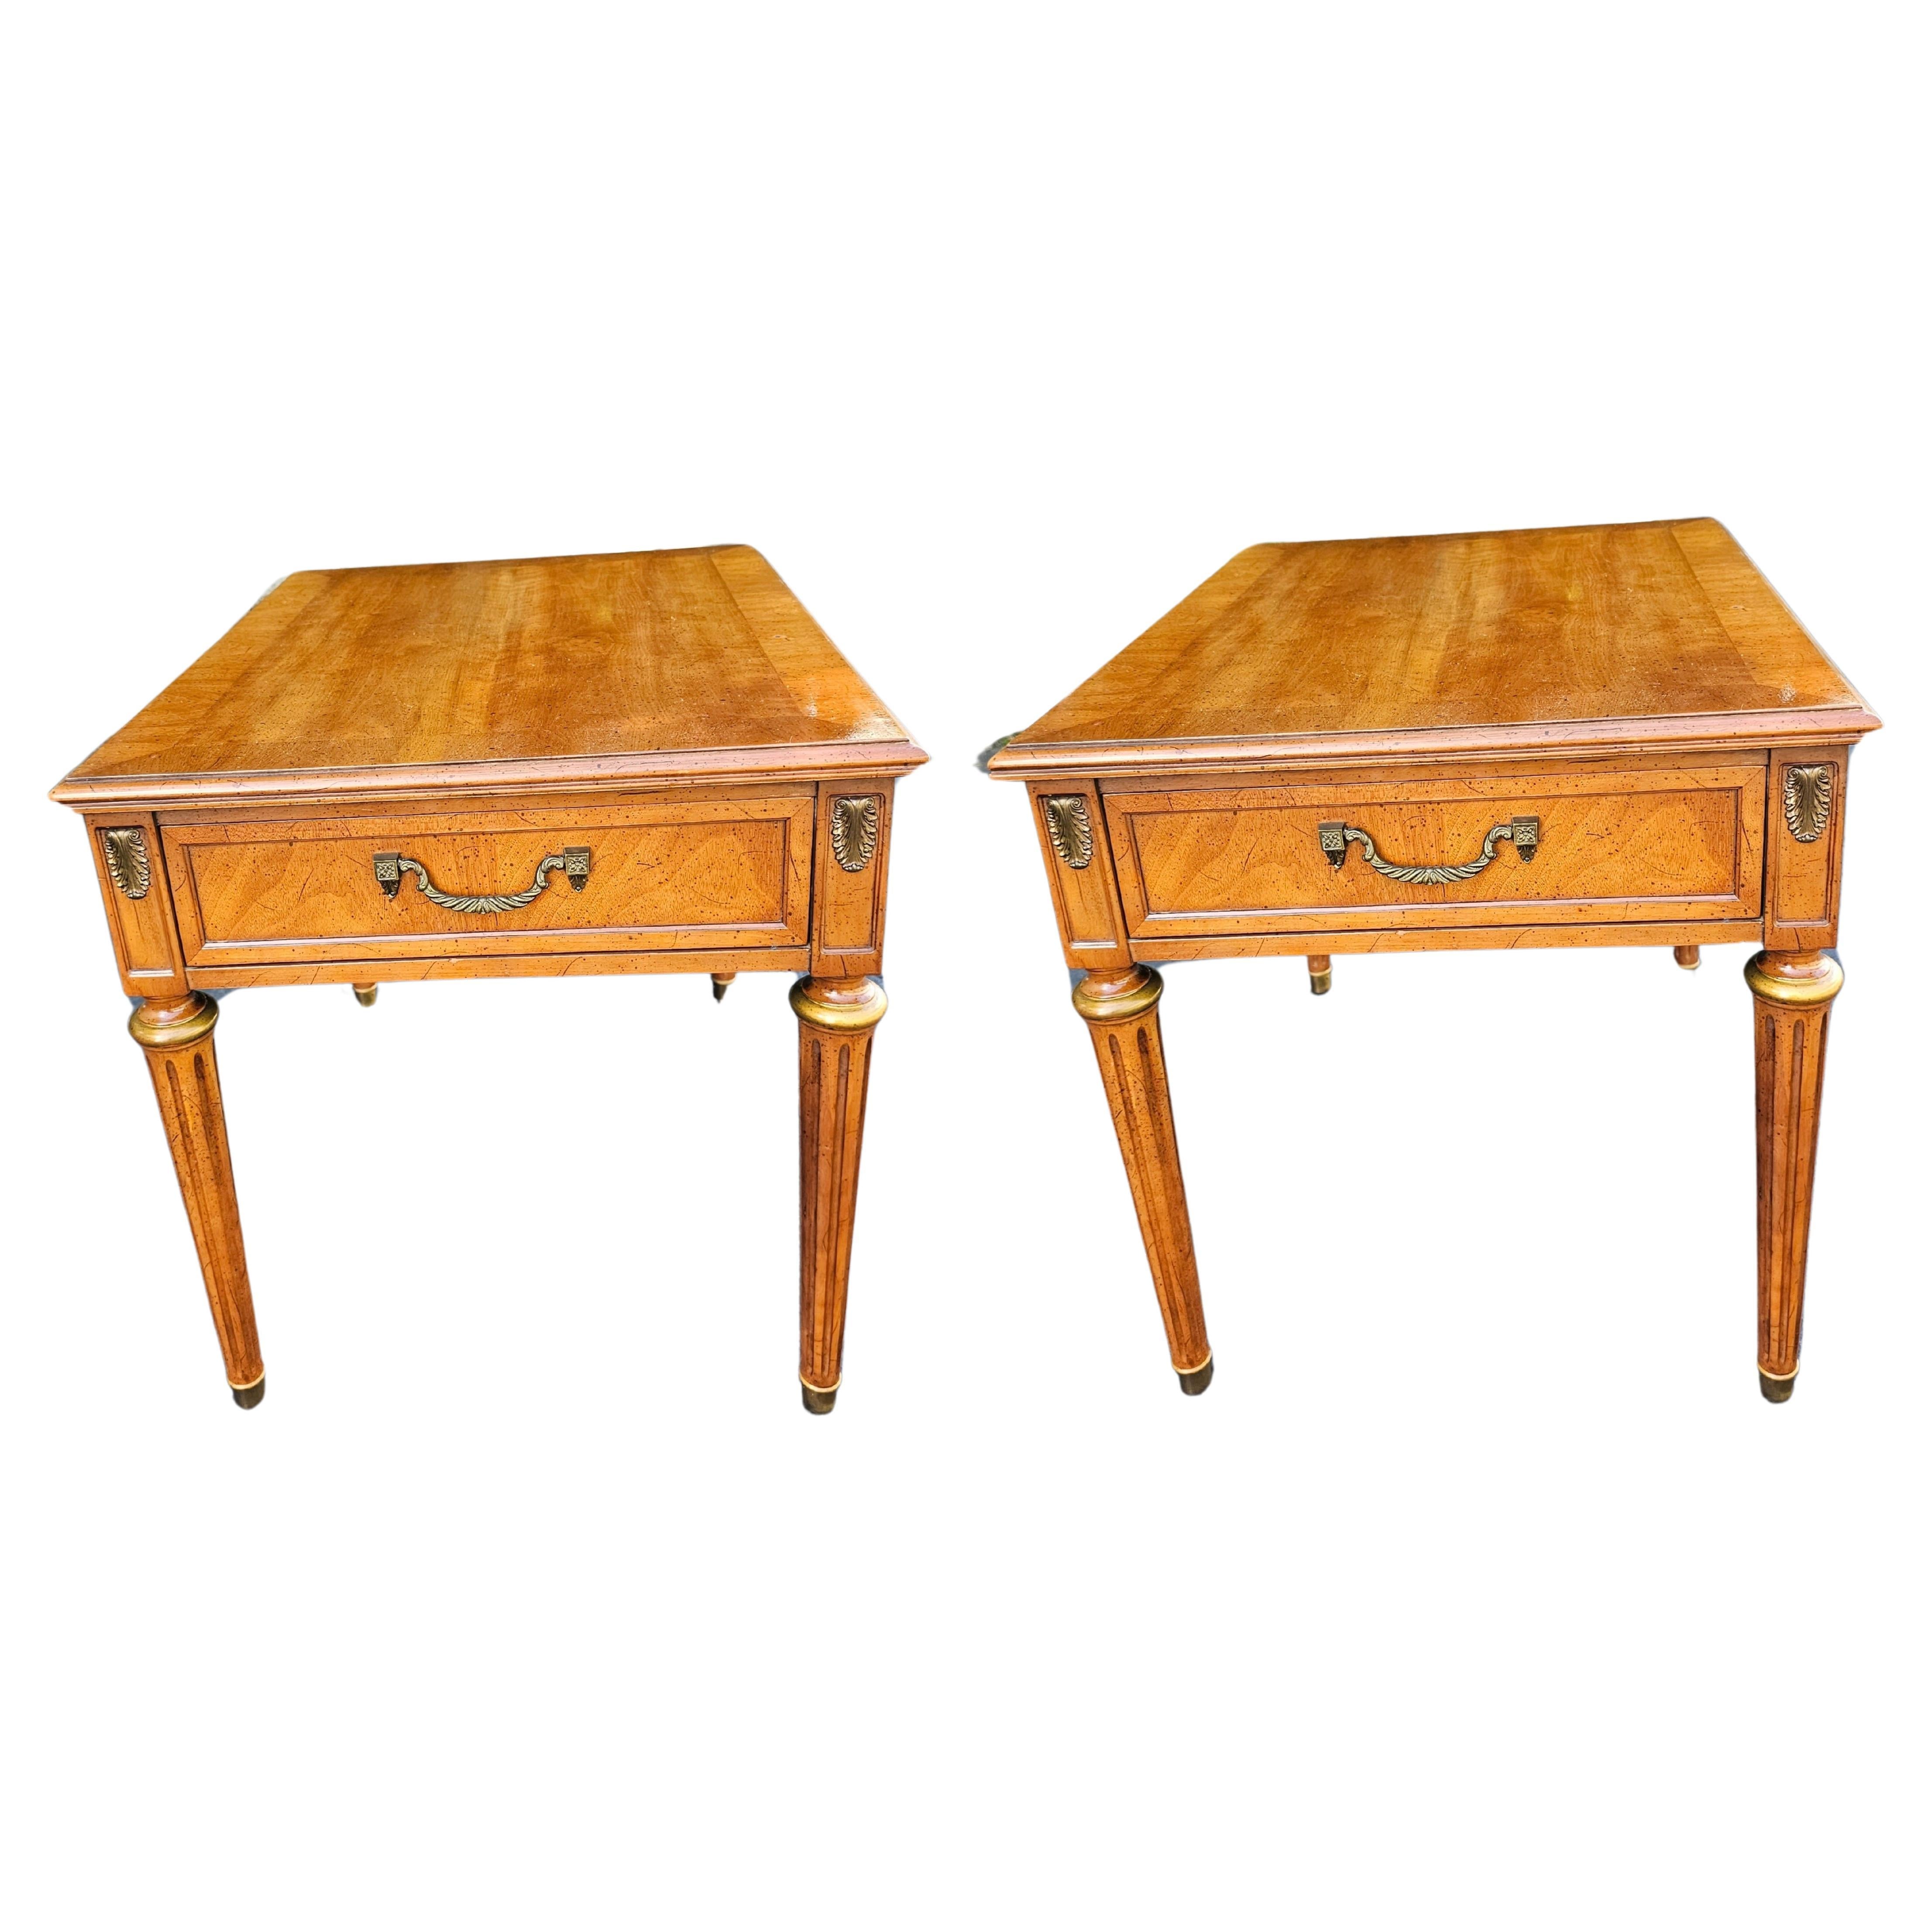 A  paire  Table à un tiroir en bois de fruitier doré et laiton de Henredon Fine Furniture Mid-Century.
mesure 